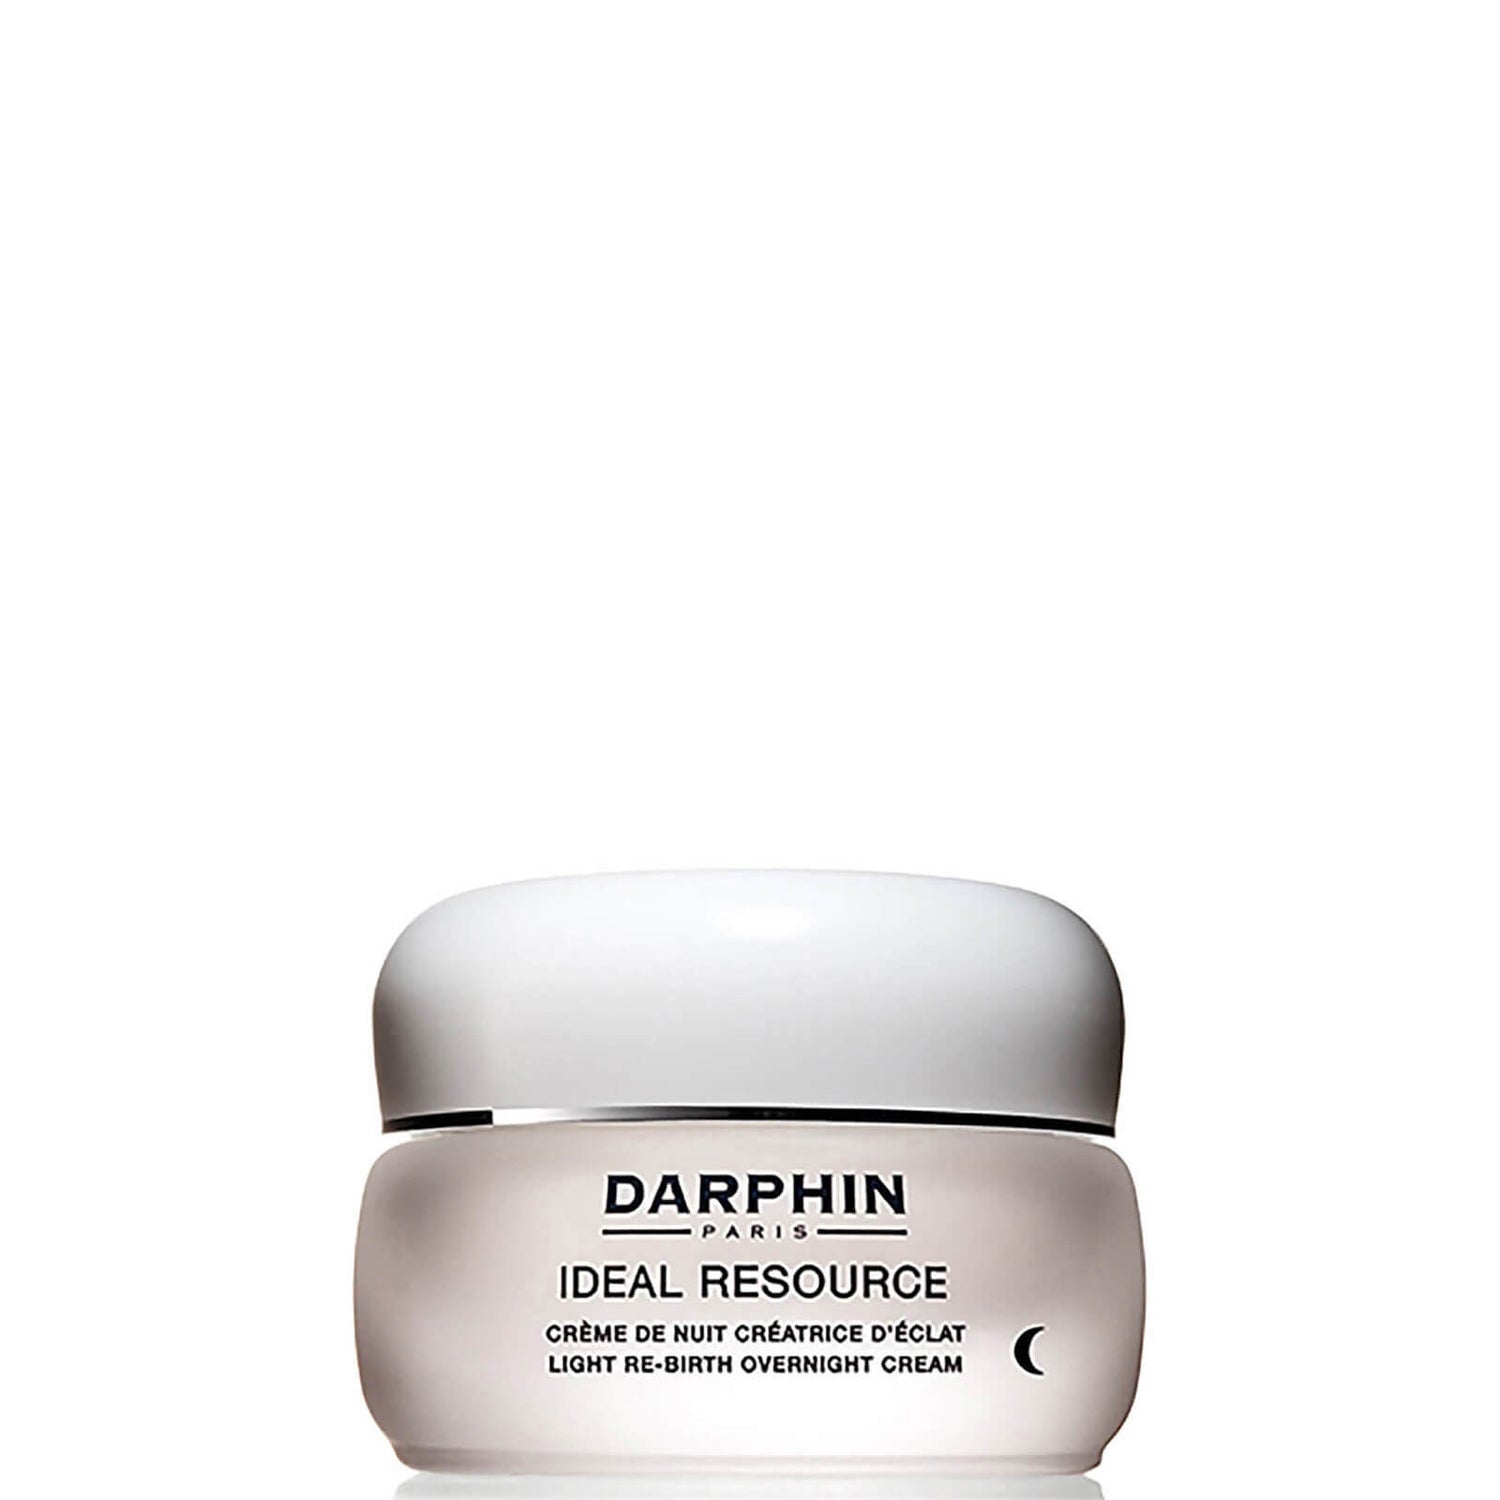 Crema de noche Darphin Ideal Resource Overnight Cream